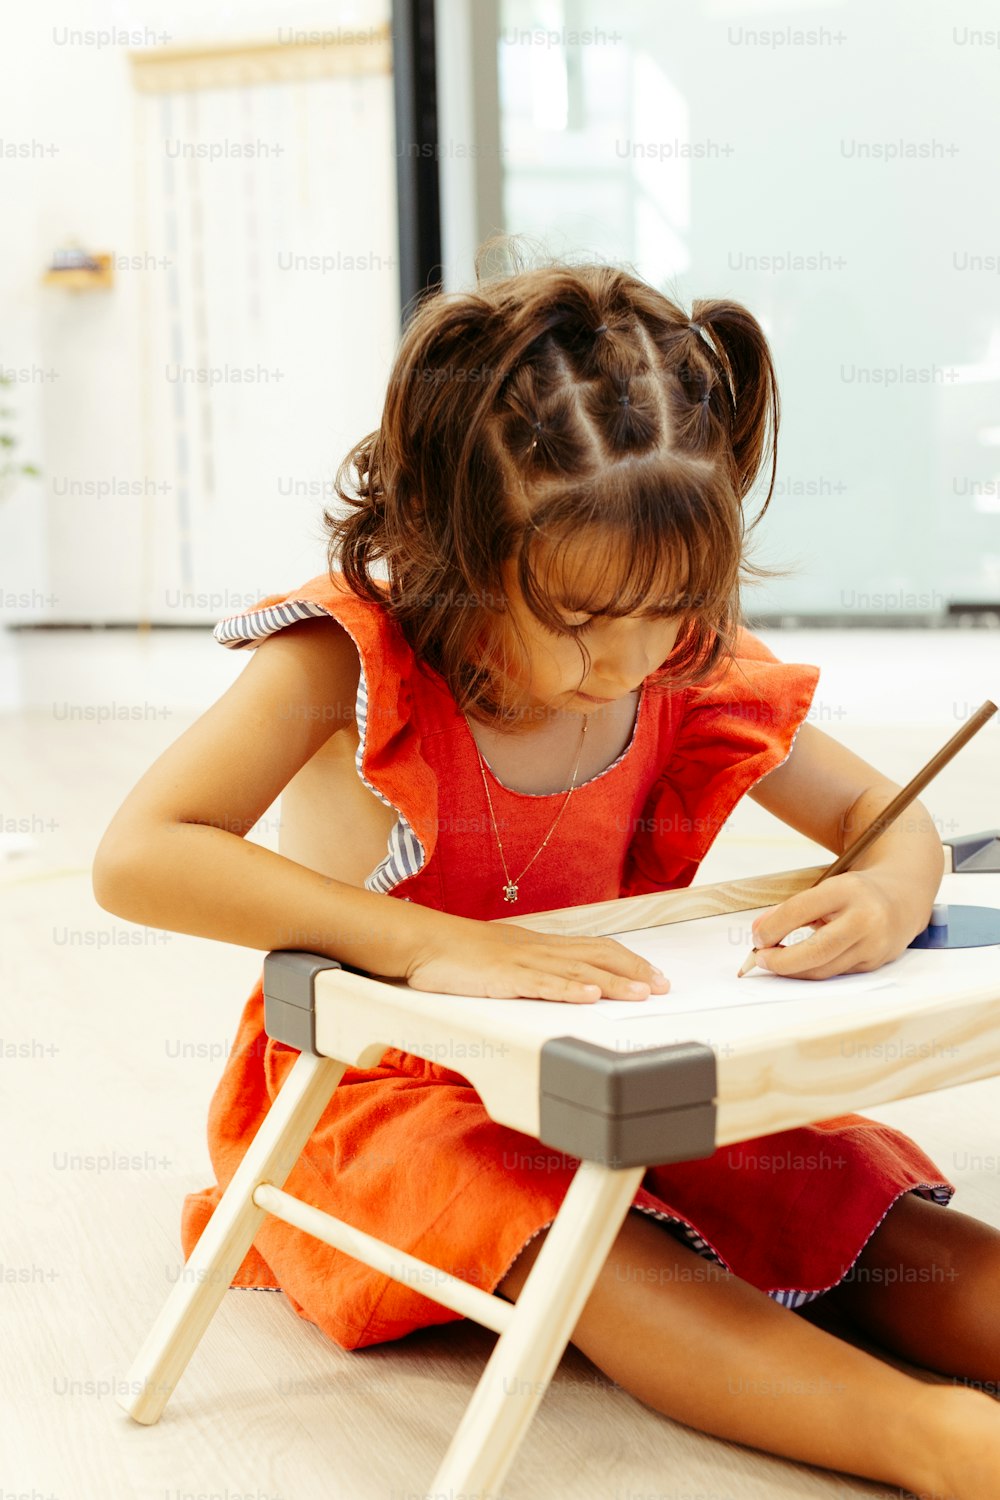 Ein kleines Mädchen, das auf dem Boden sitzt und auf ein Blatt Papier schreibt